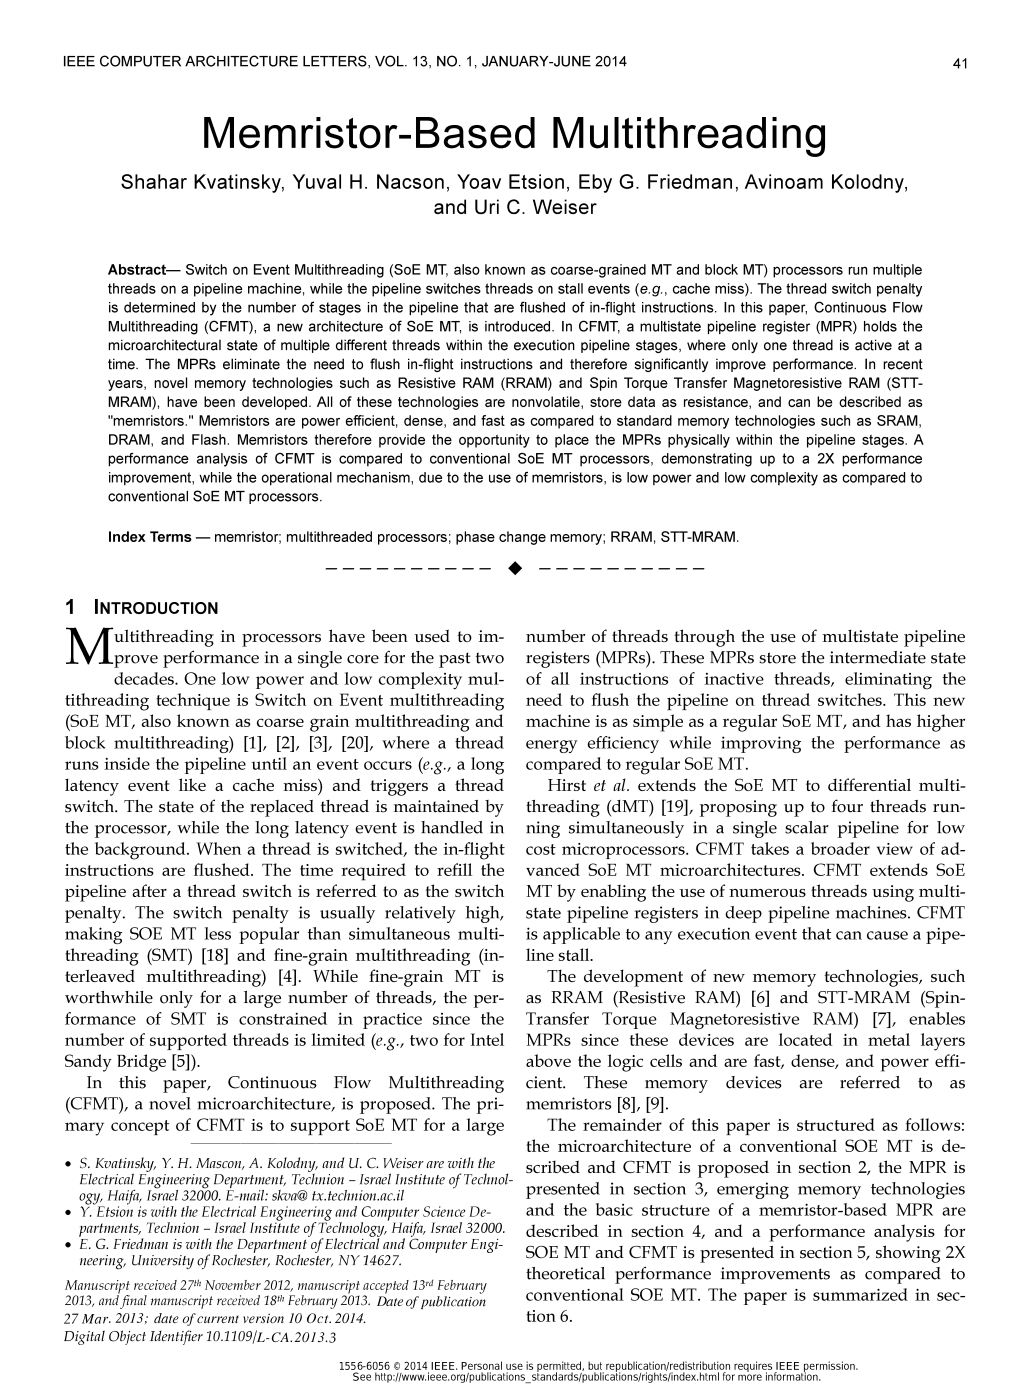 Memristor-Based Multithreading Shahar Kvatinsky, Yuval H